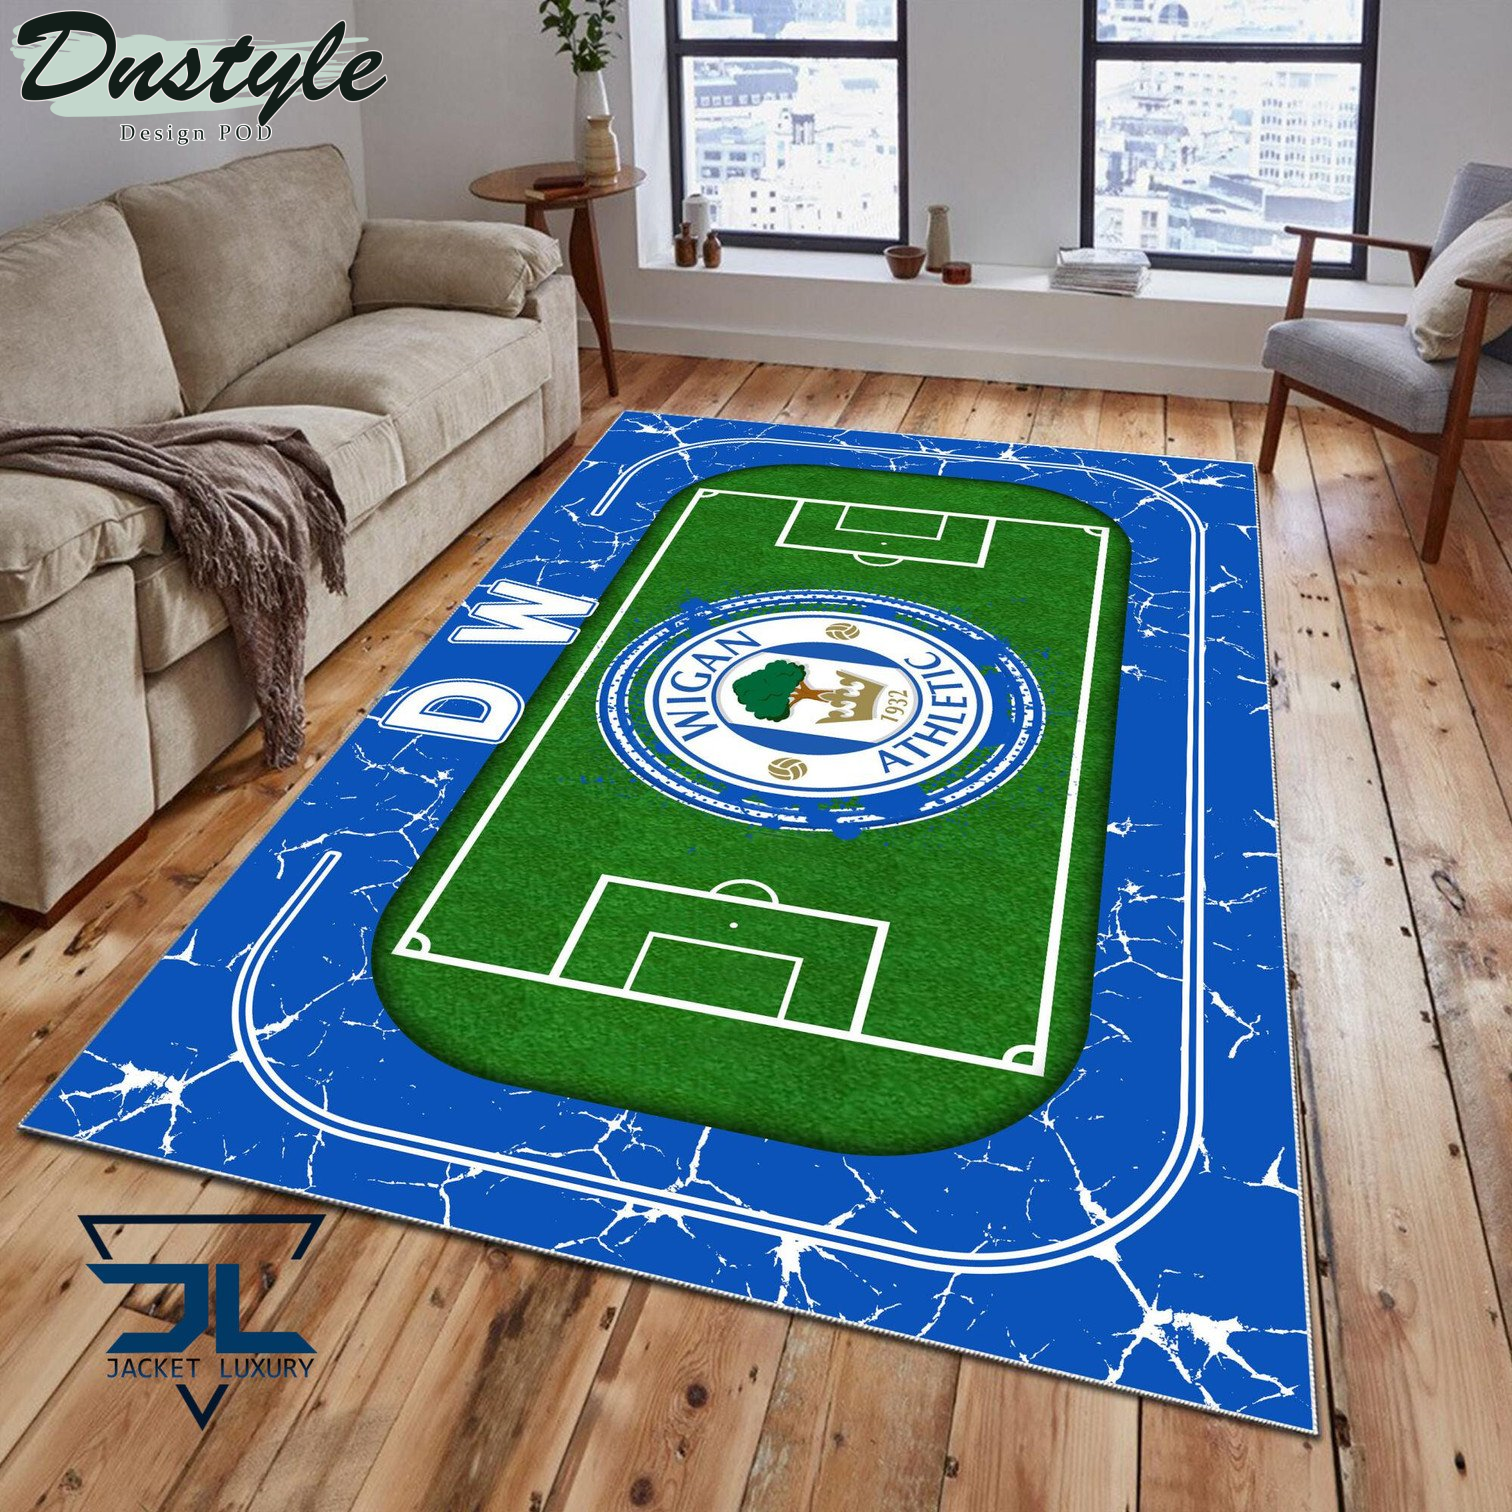 Wigan Athletic Rug Carpet